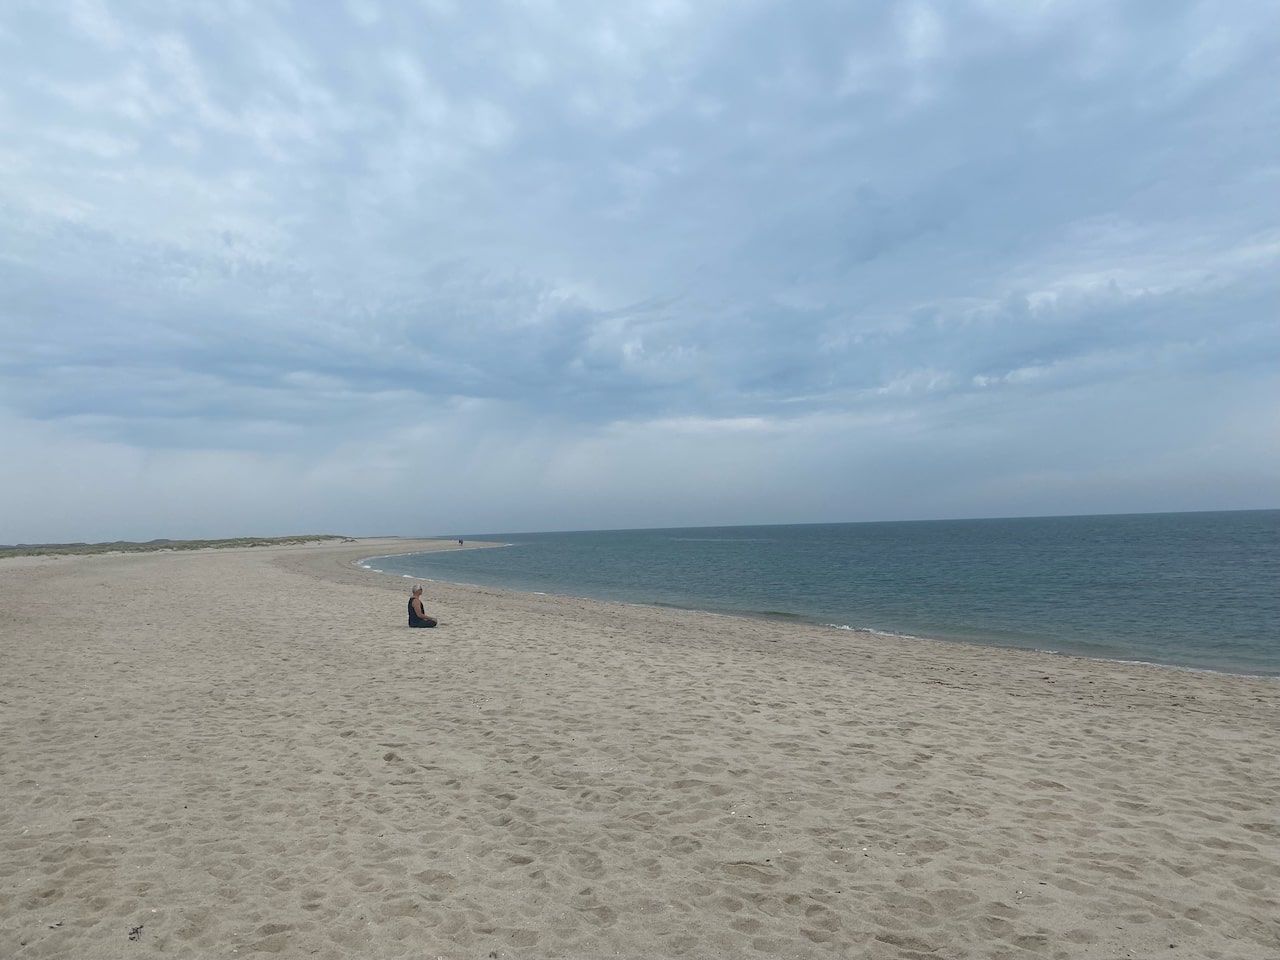 Una persona siede su una spiaggia sabbiosa sotto un cielo nuvoloso e si gode la pace e la bellezza del paesaggio naturale.